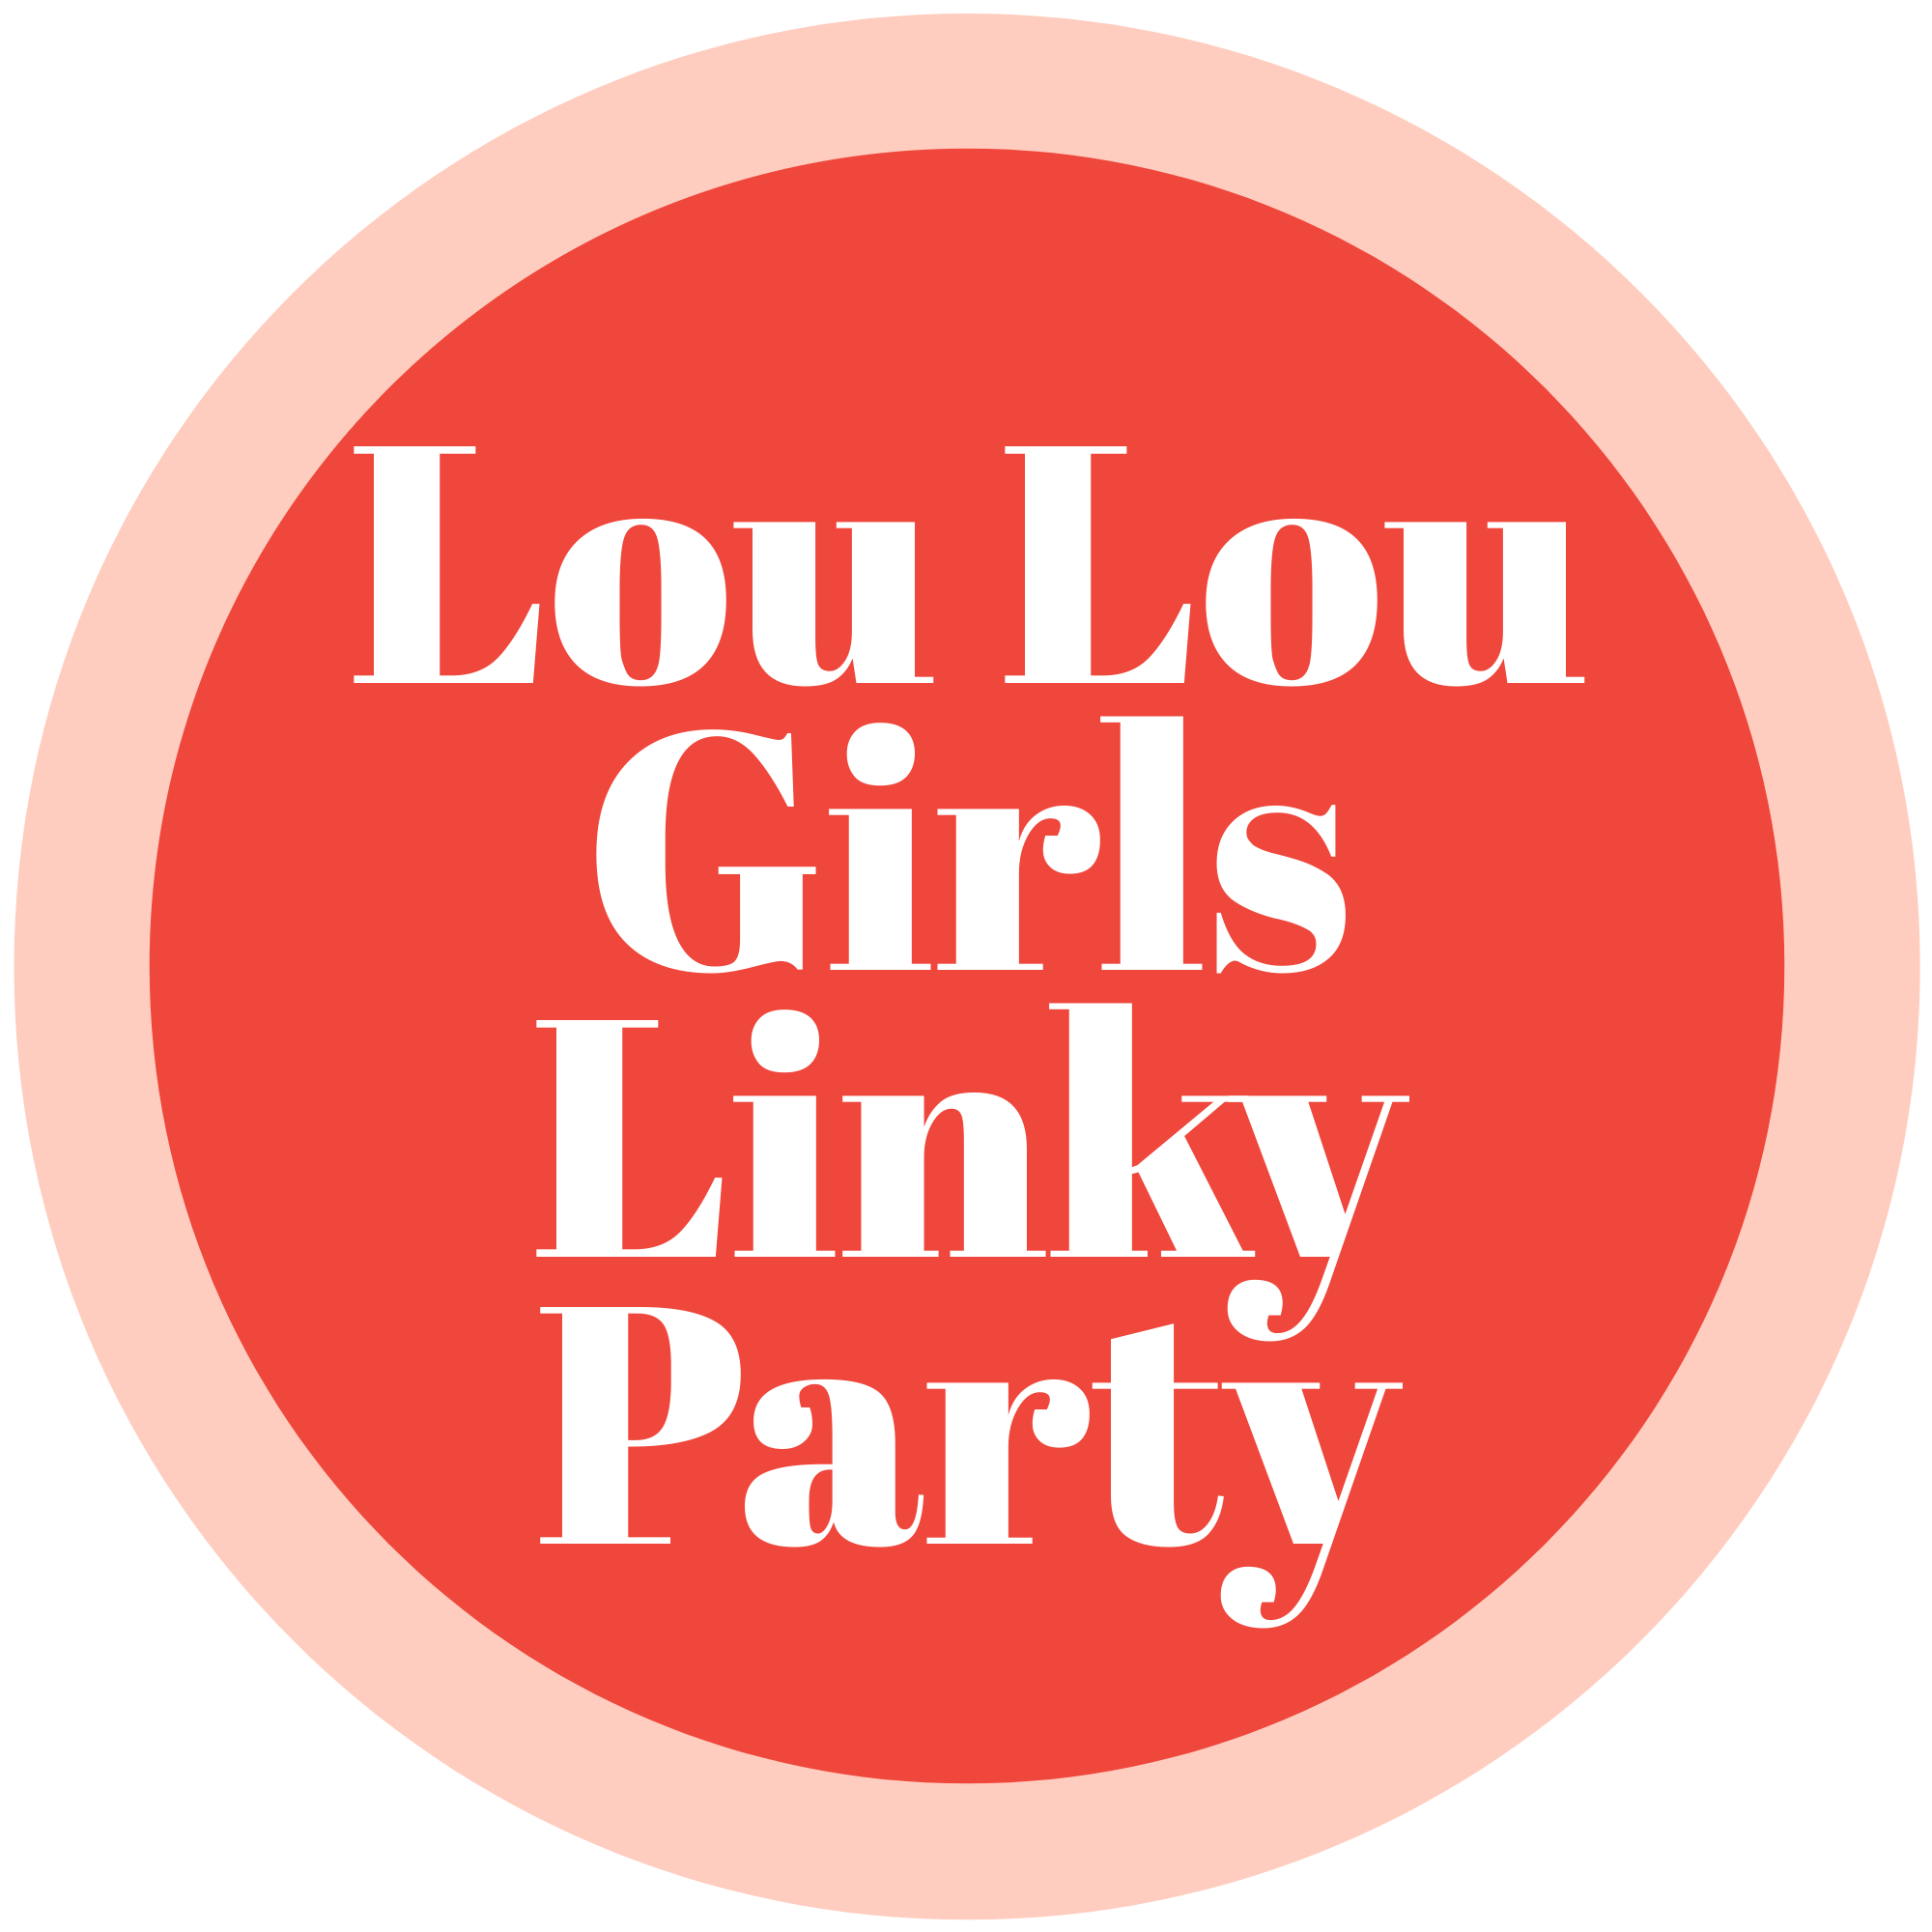 LOU LOU GIRLS FABULOUS PARTY 537